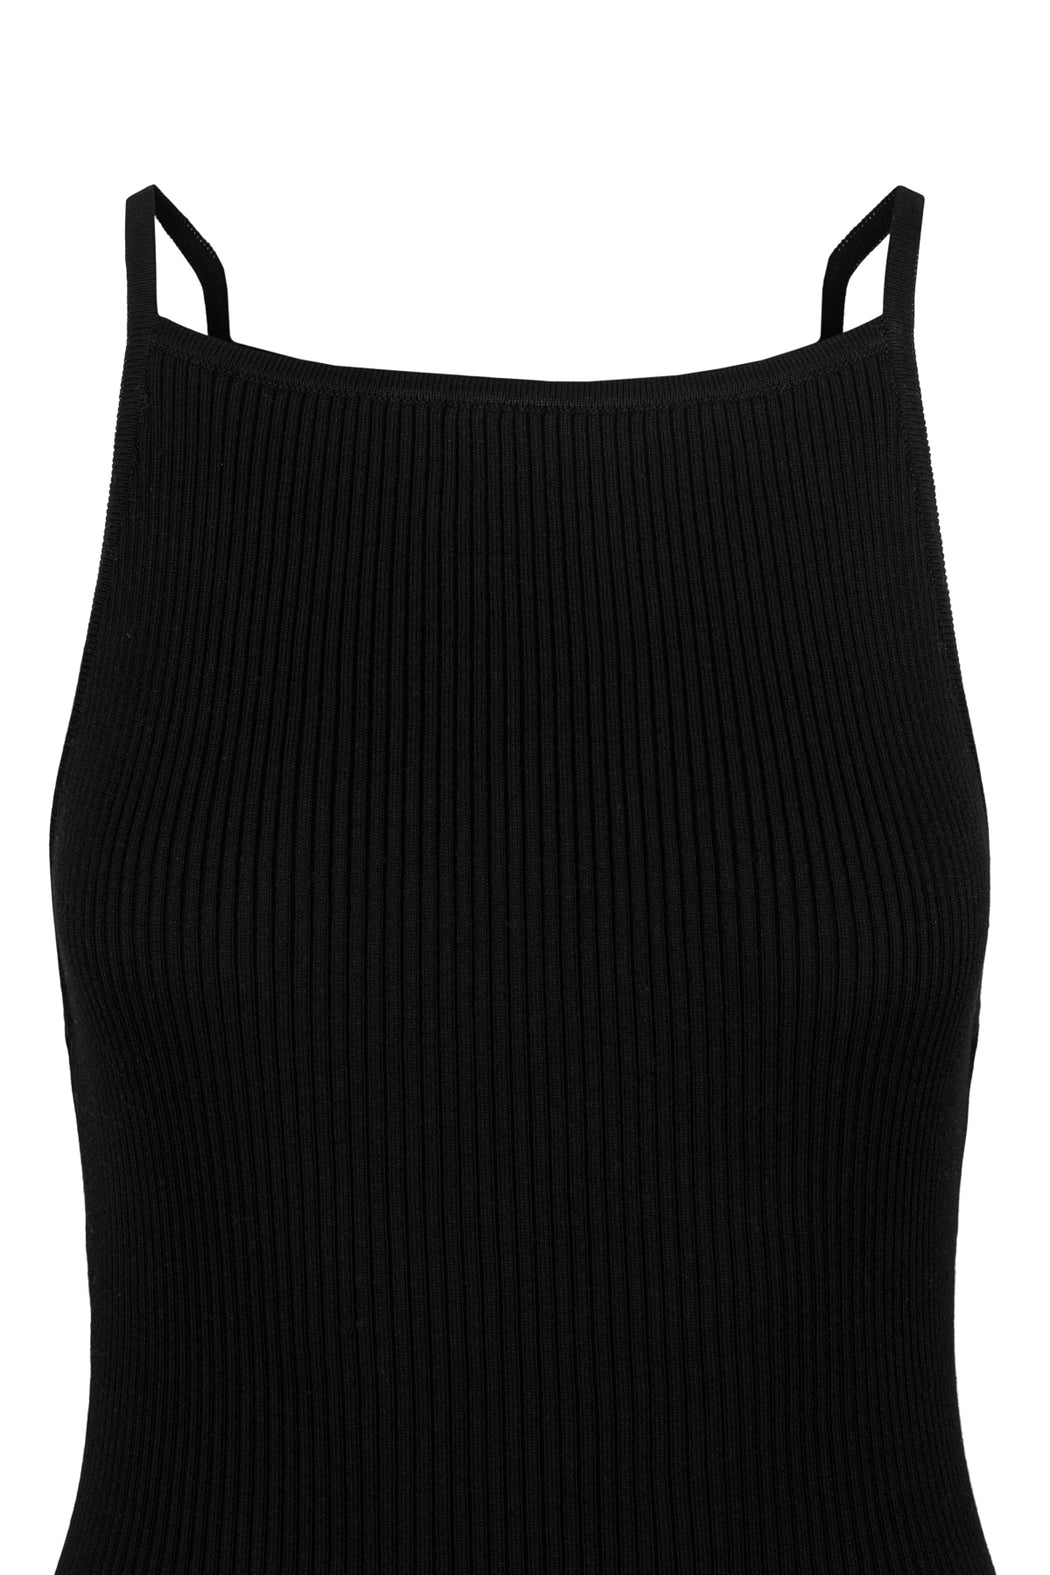 Envelope1976 Alfaz dress - Organic cotton Dress Black